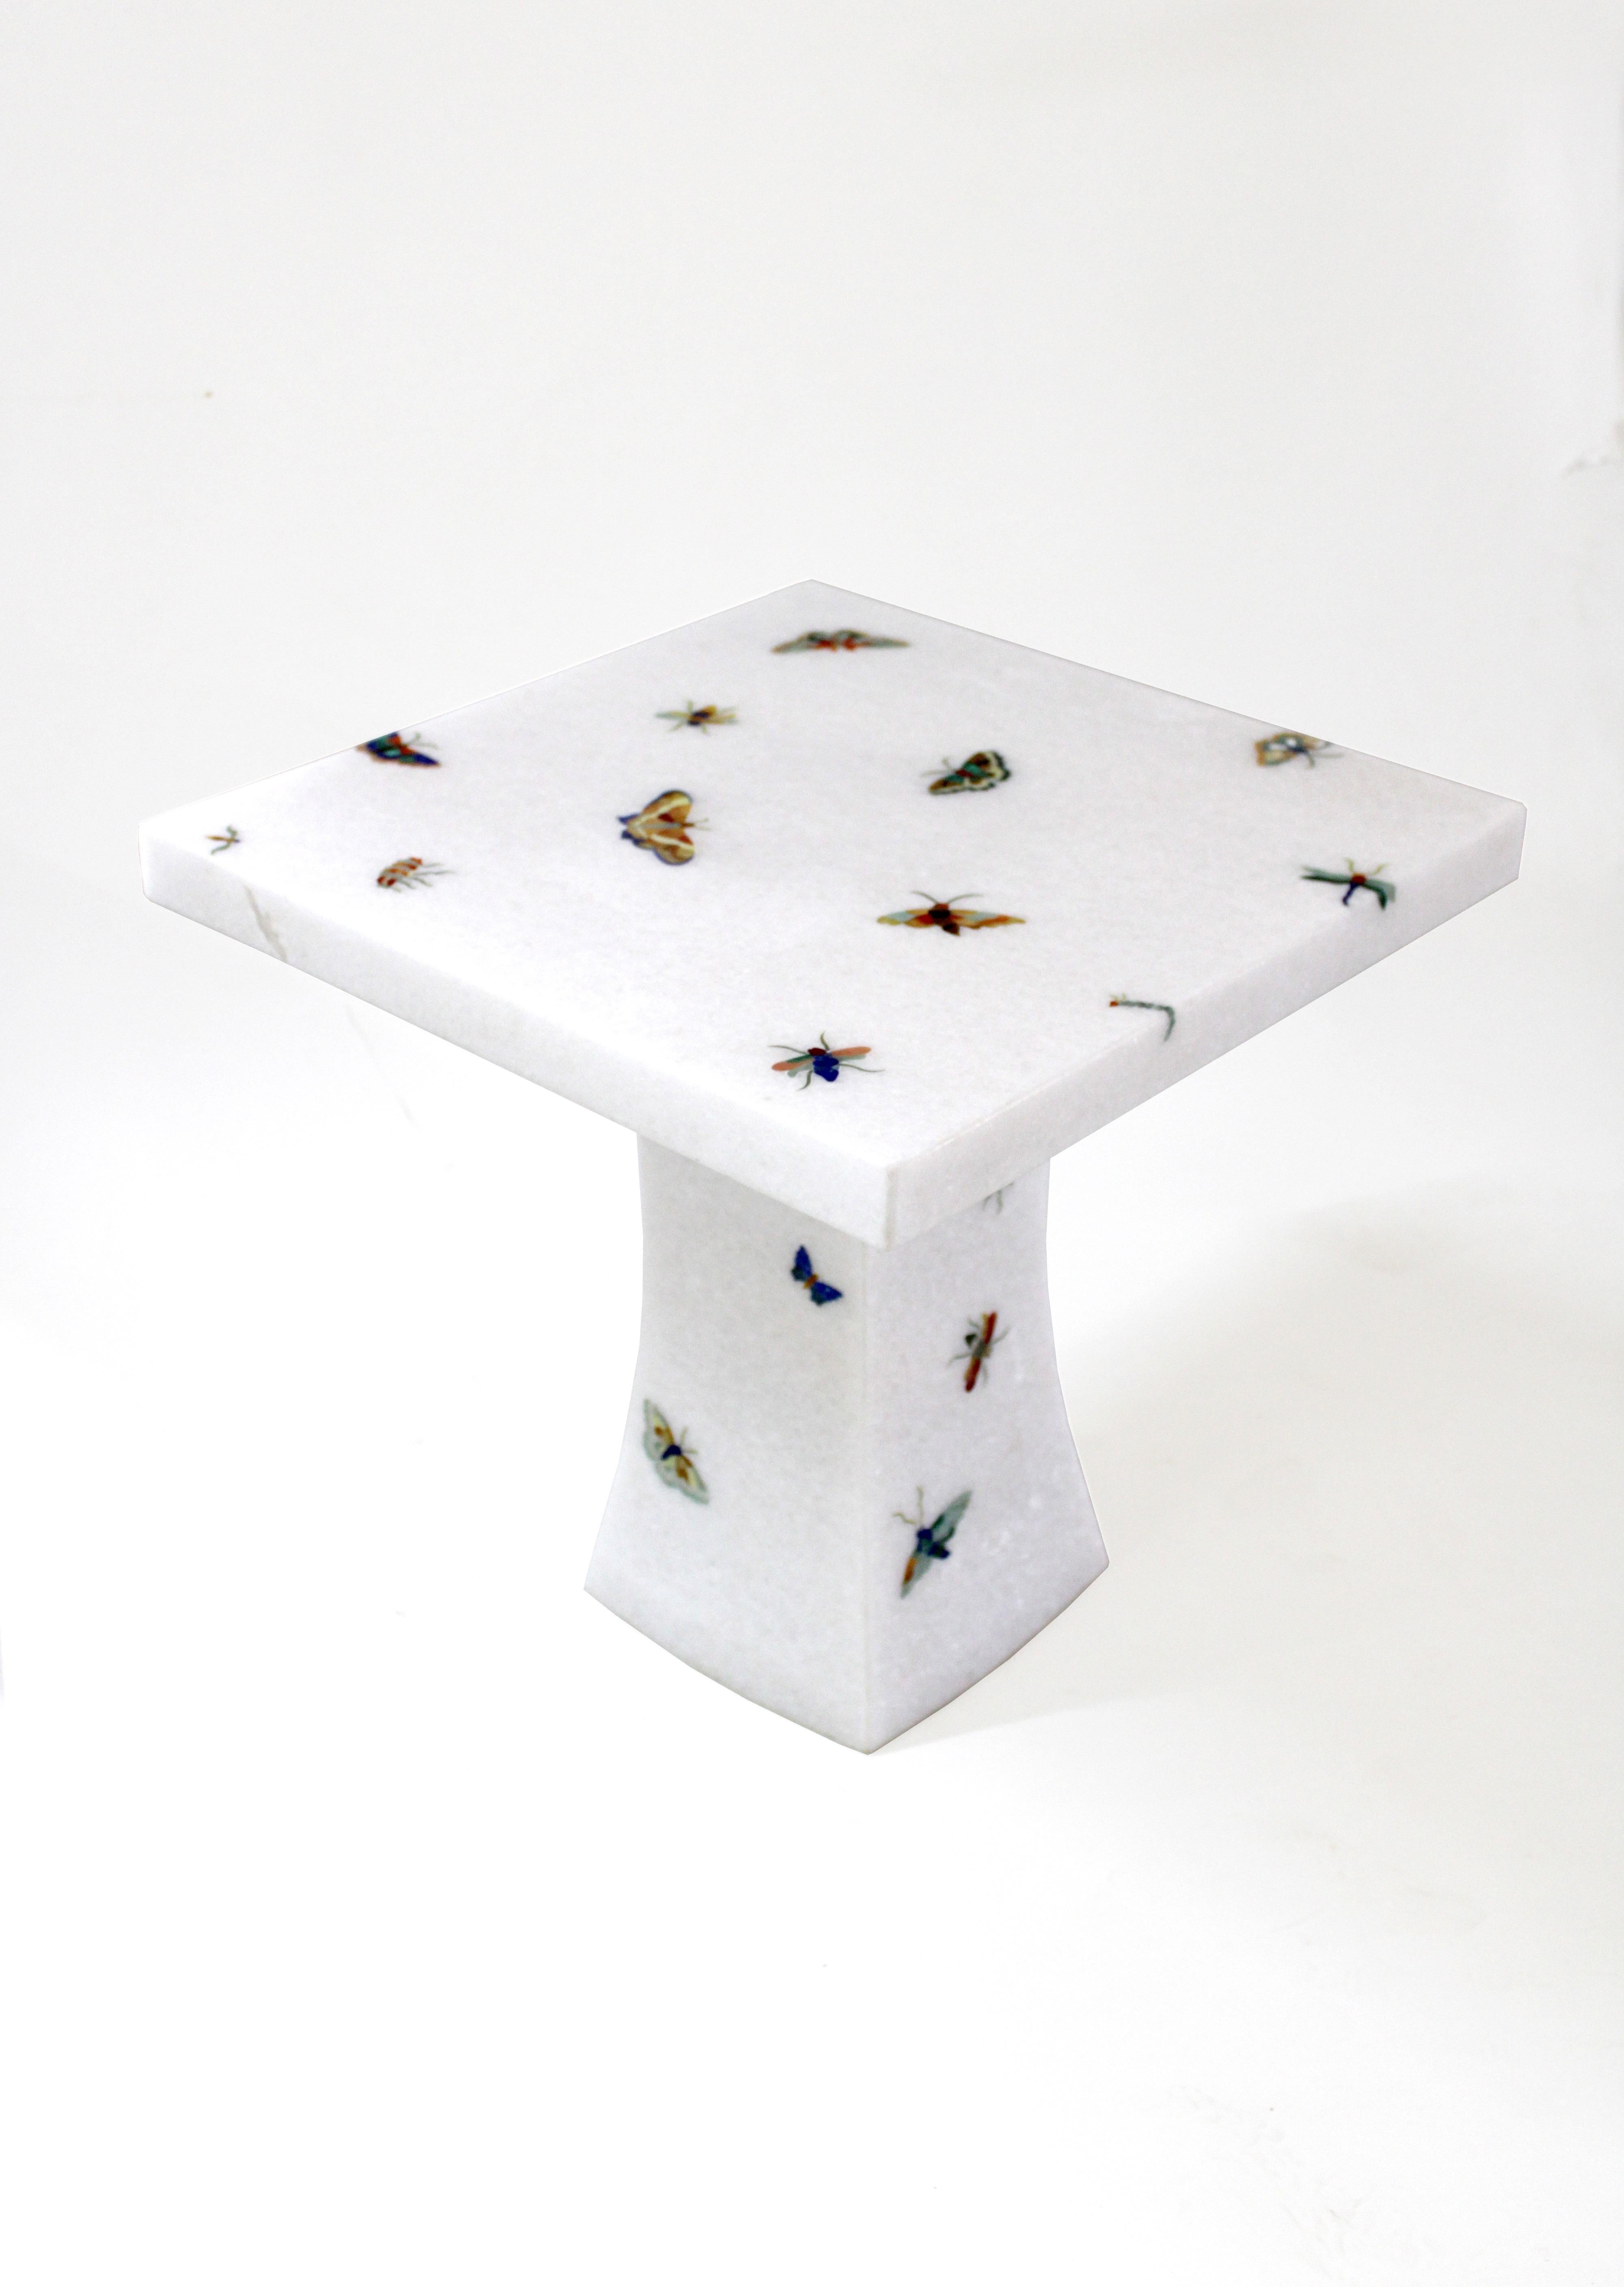 La table papillon fait partie de la collection Ornamenti. Des morceaux d'agate, d'yeux de tigre, de nacre et d'autres pierres semi-précieuses délicatement taillés sont transformés en motifs de papillons et soigneusement incrustés dans la pierre de